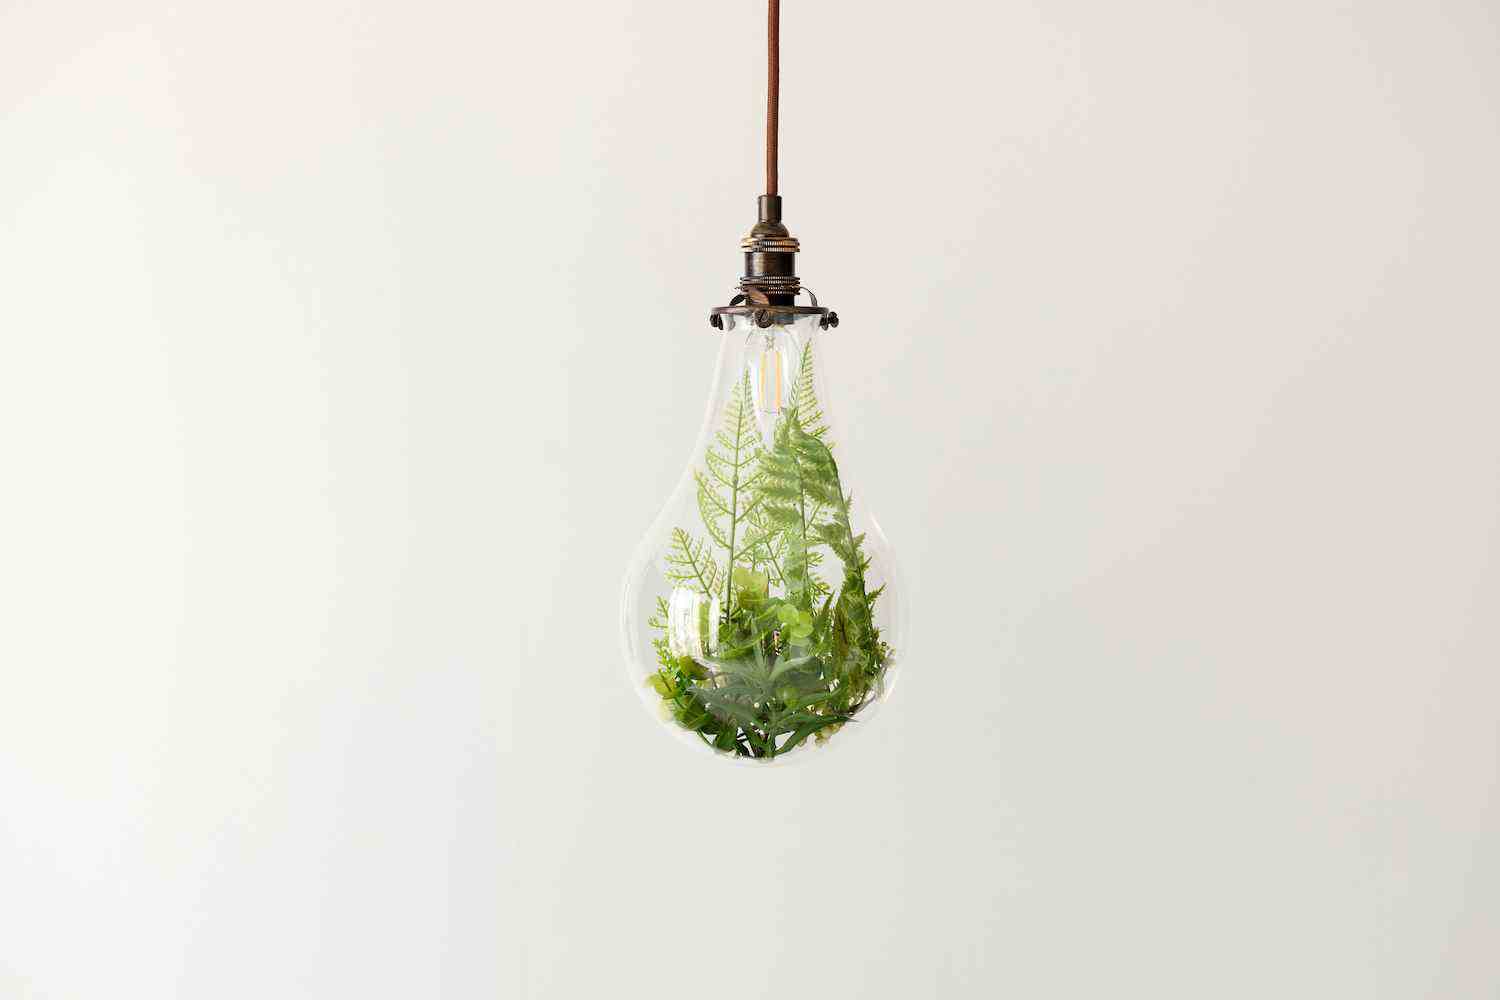 Une image composite d'un terrarium à l'intérieur d'une ampoule nue et suspendue.